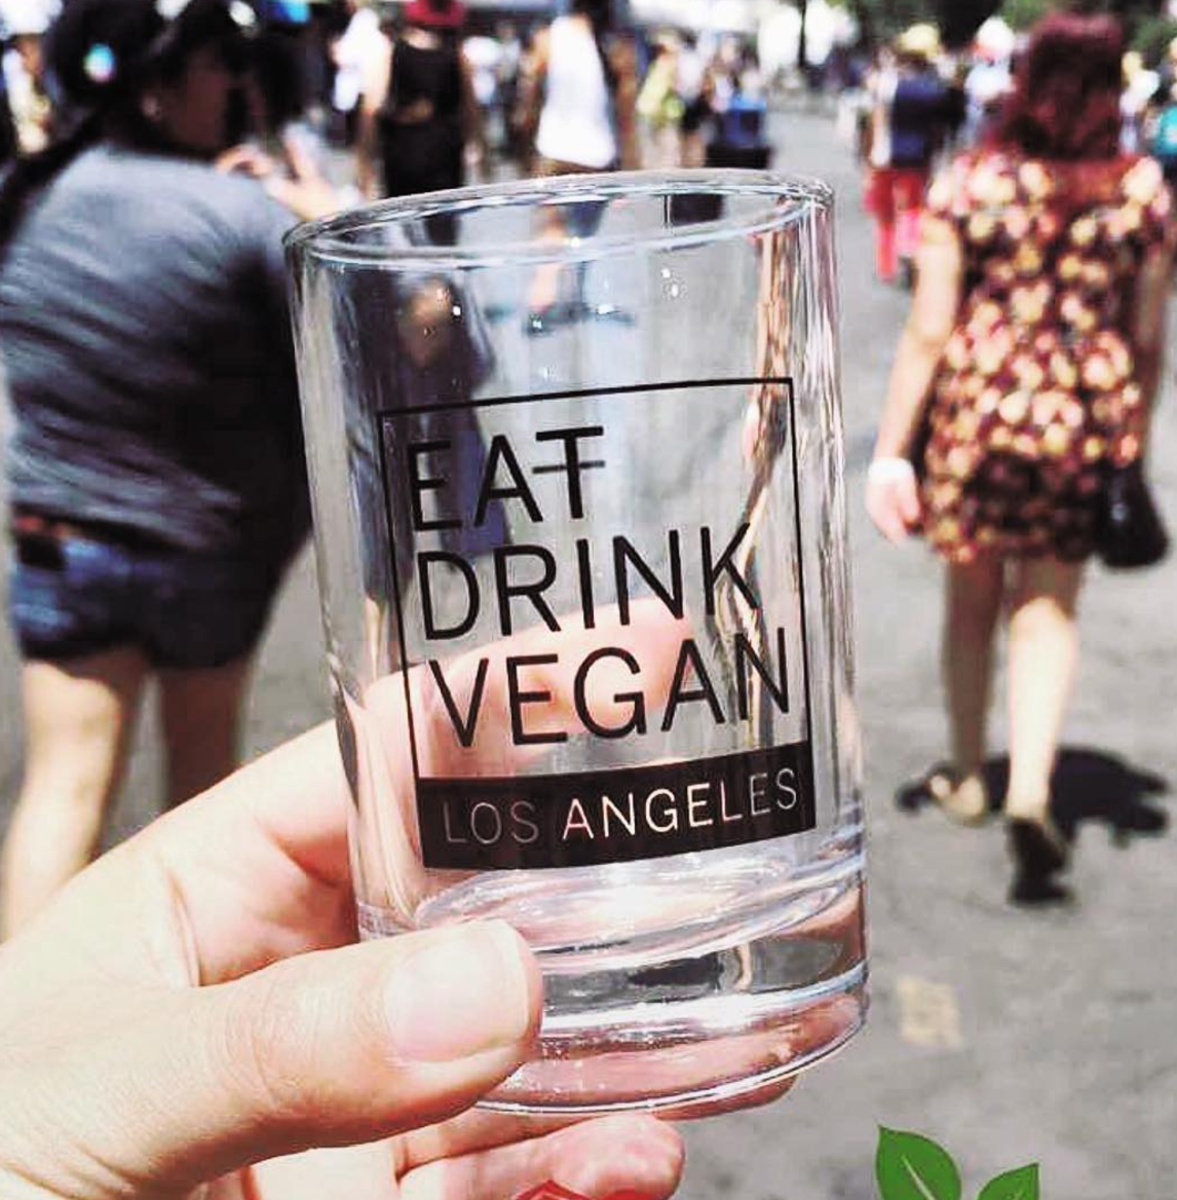  Image via Eat Drink Vegan/Instagram